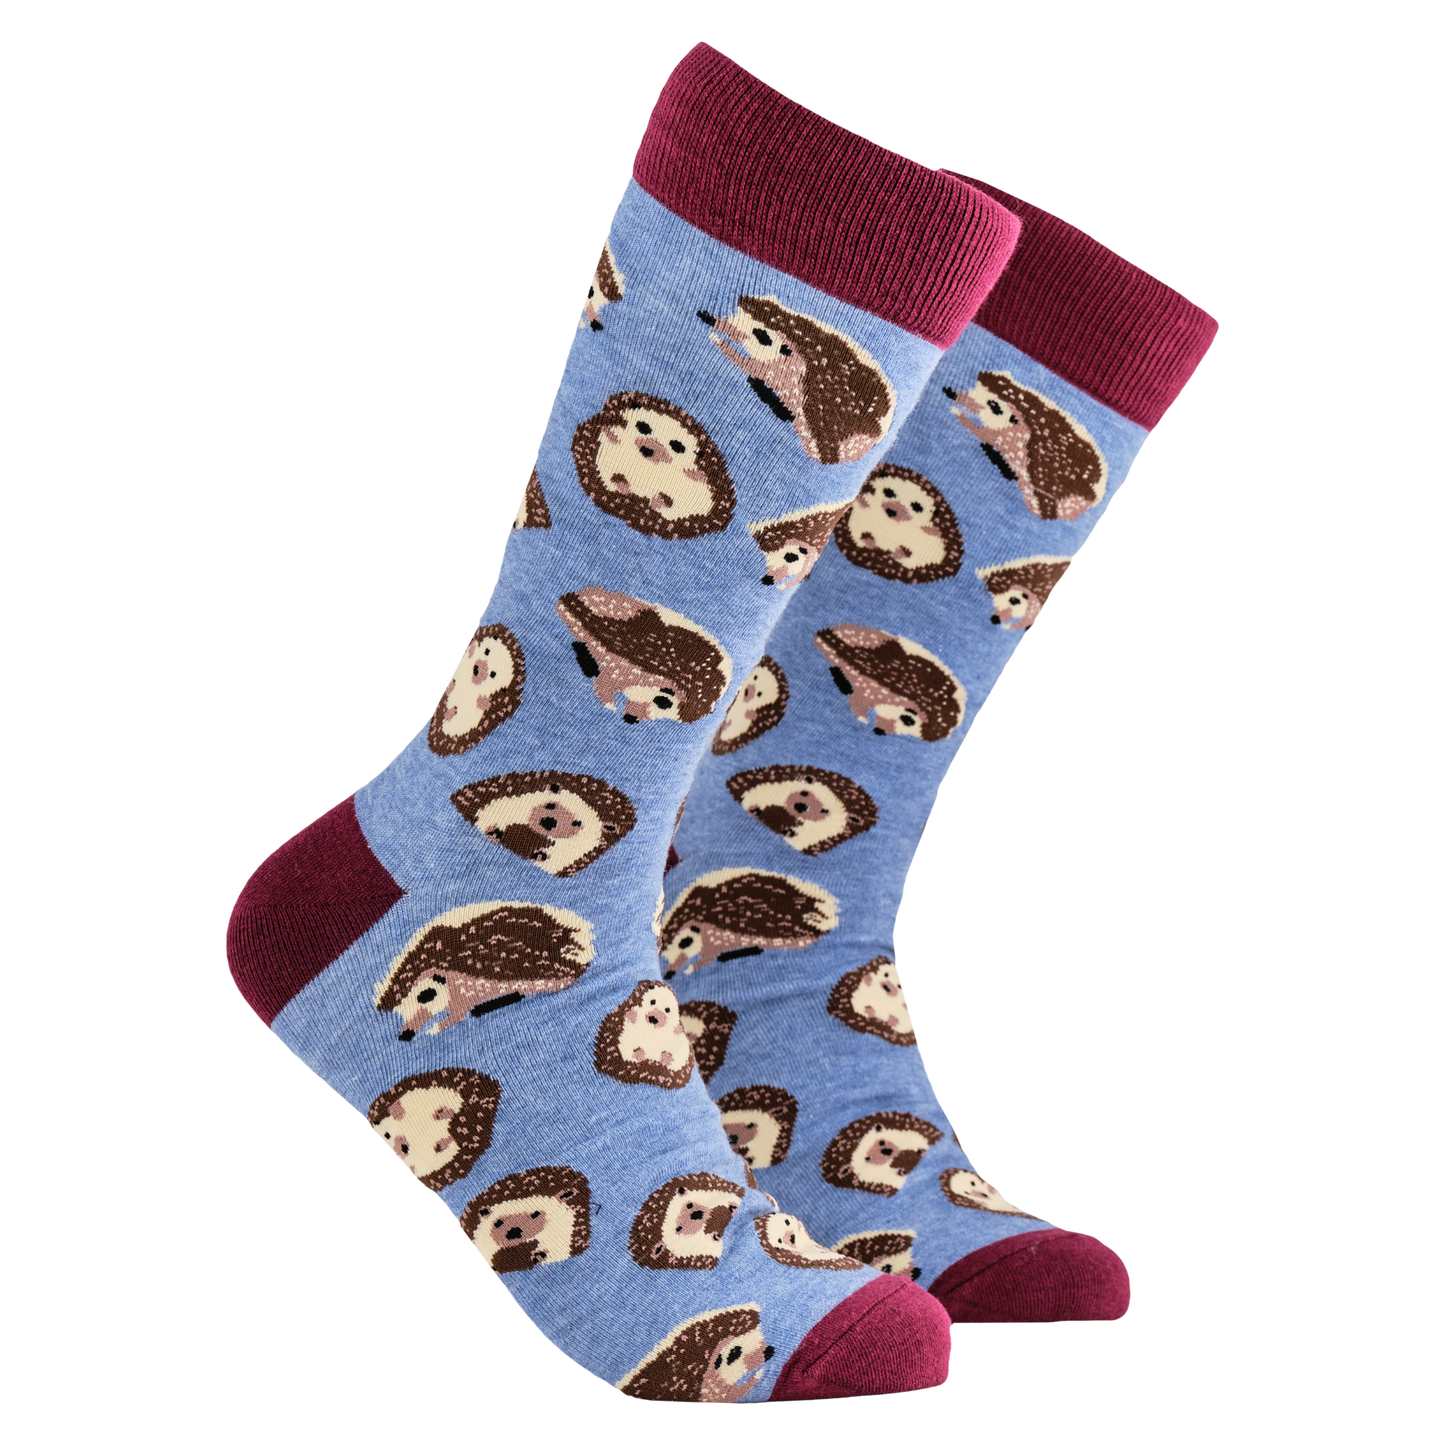 Hedgehog Socks - Prickly. A pair of socks depicting hedgehogs. Blue legs, red cuff, heel and toe.